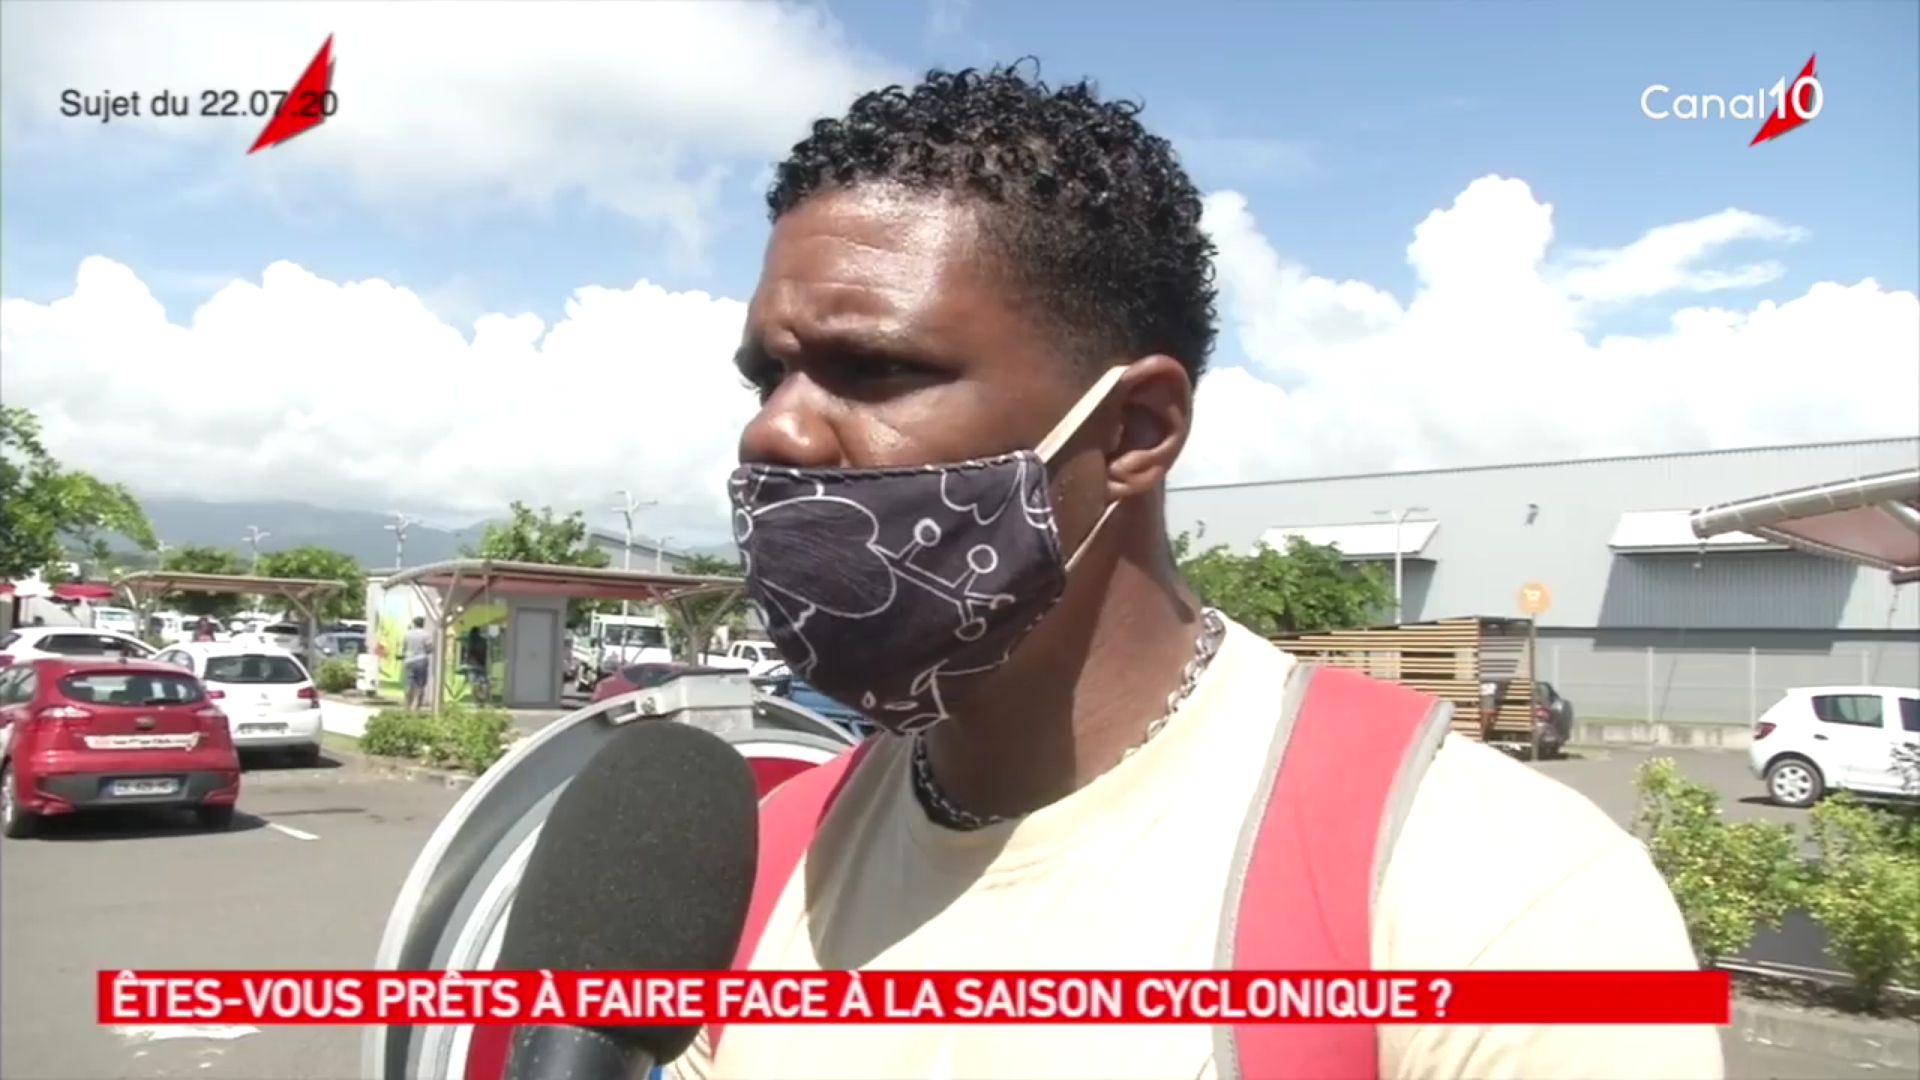 [Vidéo] Onews Guadeloupe. Les guadeloupéens se préparent pour la période cyclonique (Canal 10)